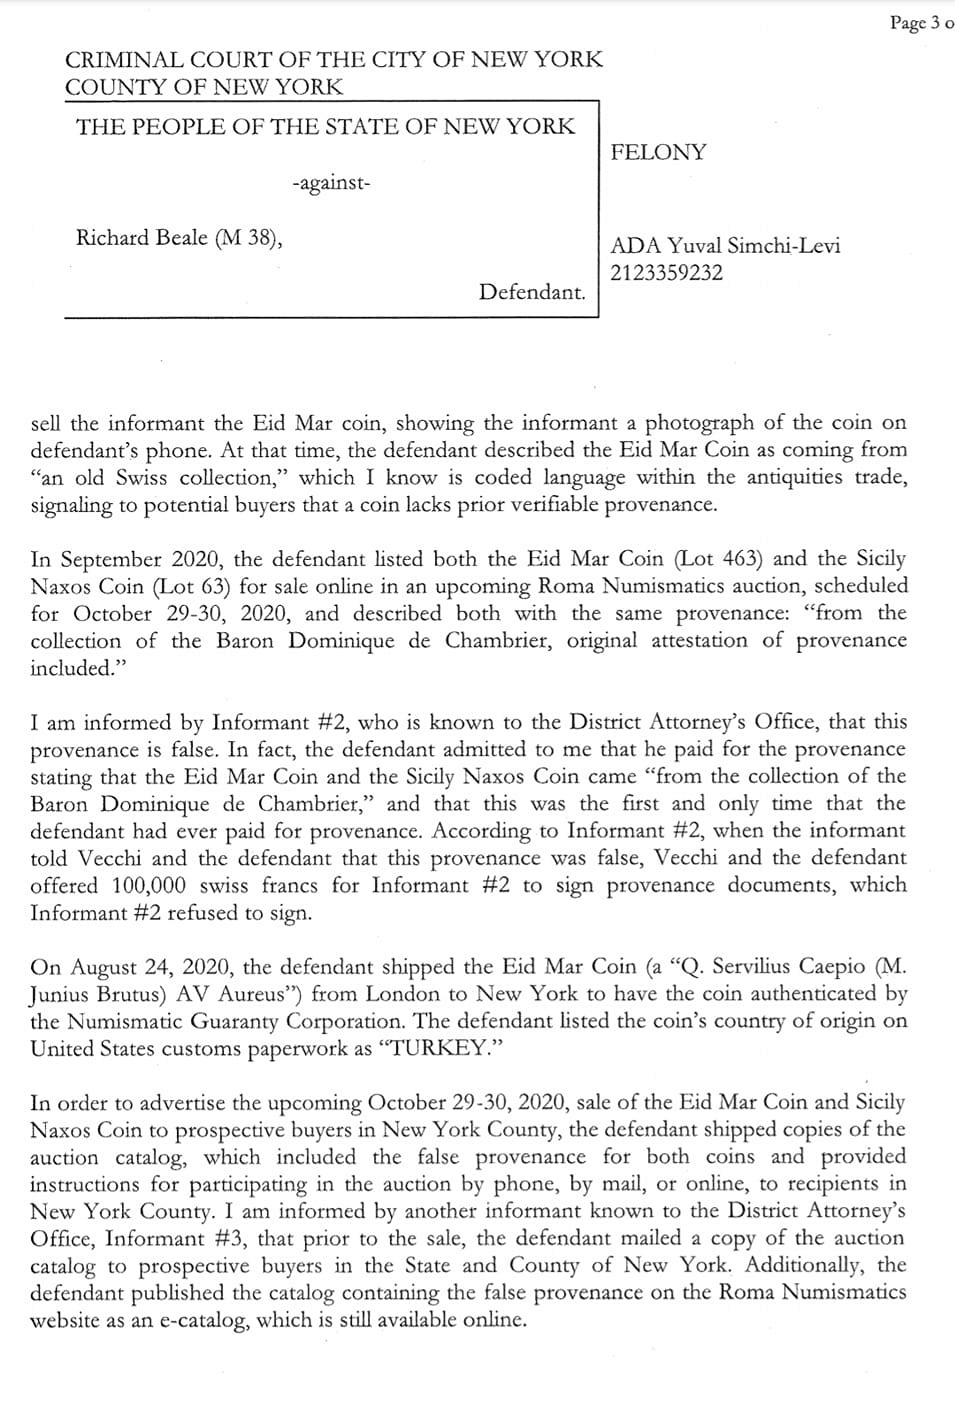 Le patron de ROMA arrêté à New York pour fraude ! - Page 2 Image10